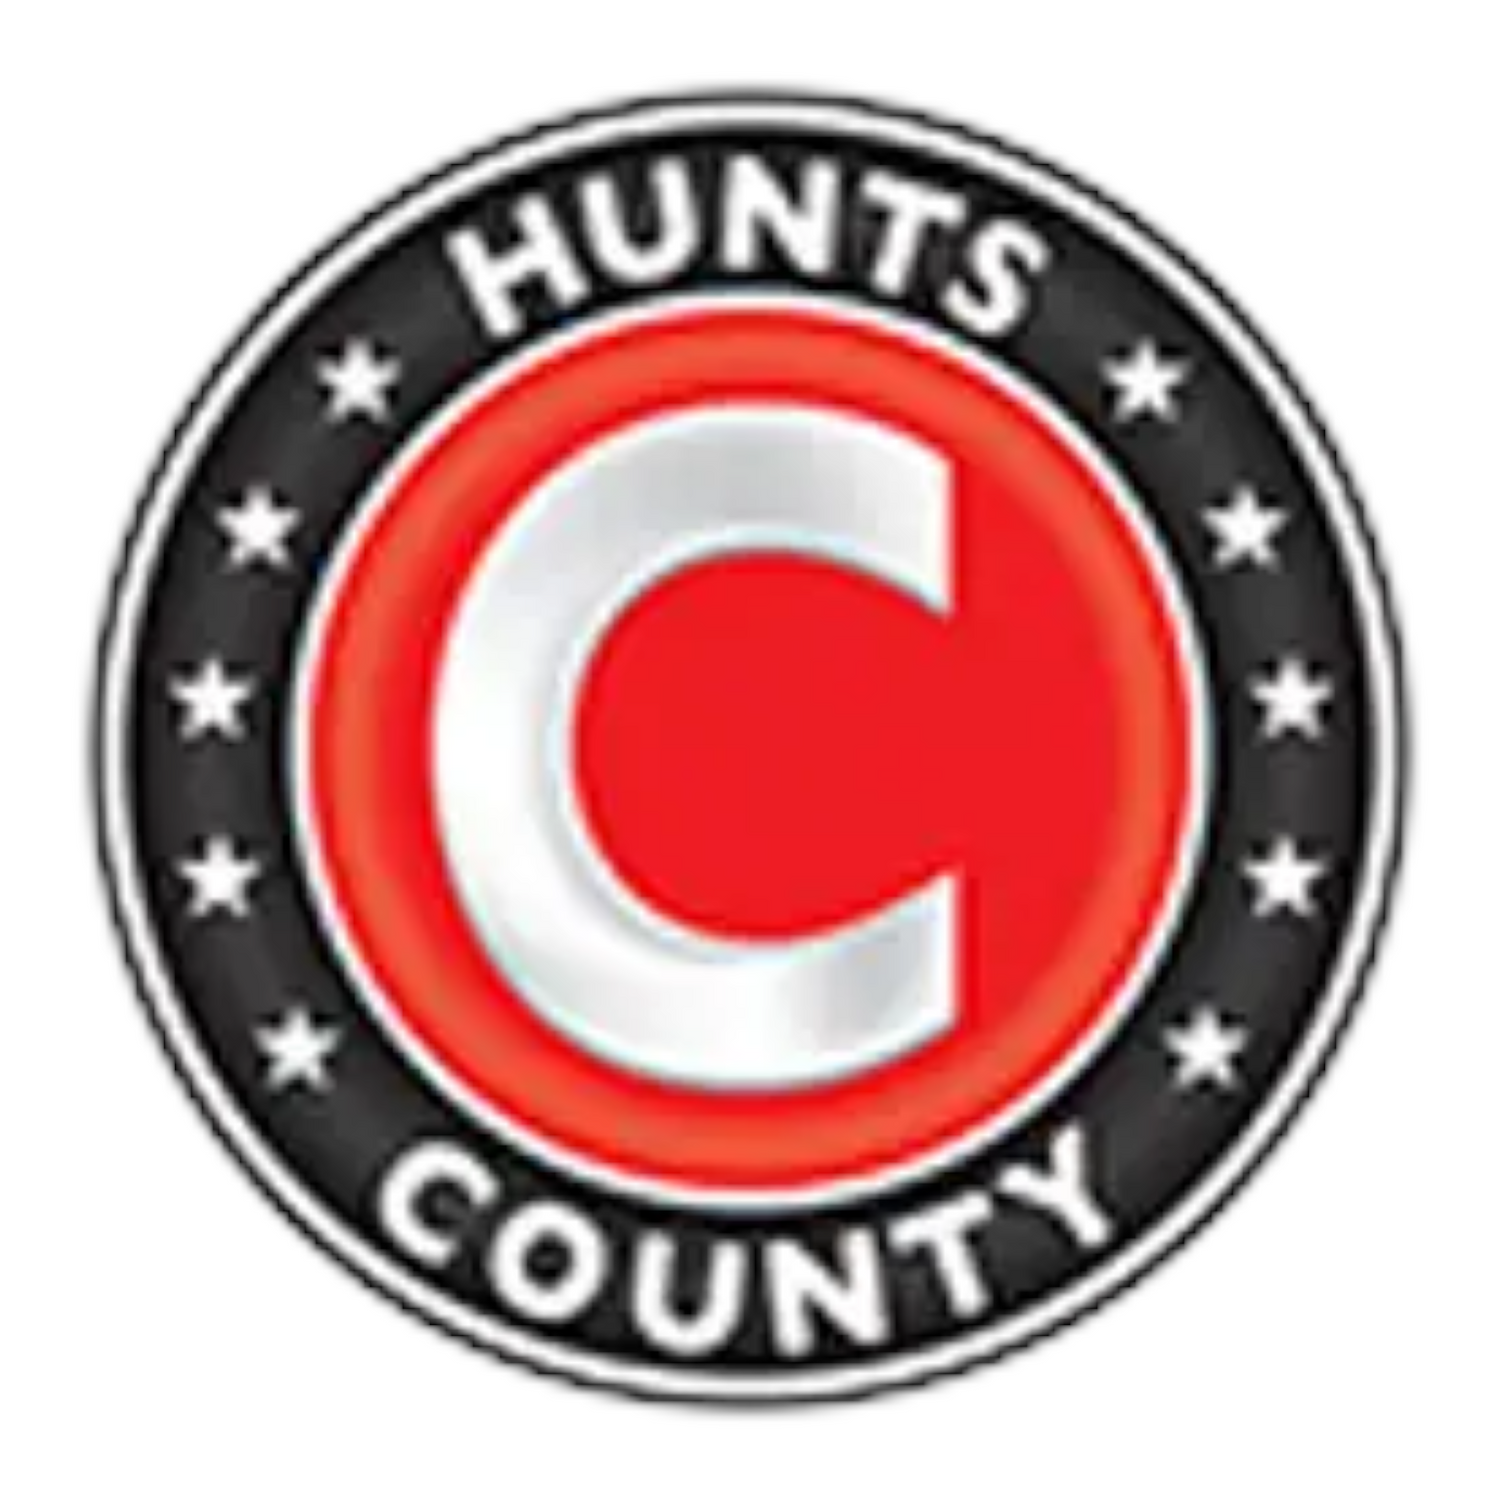 Hunts County Bats